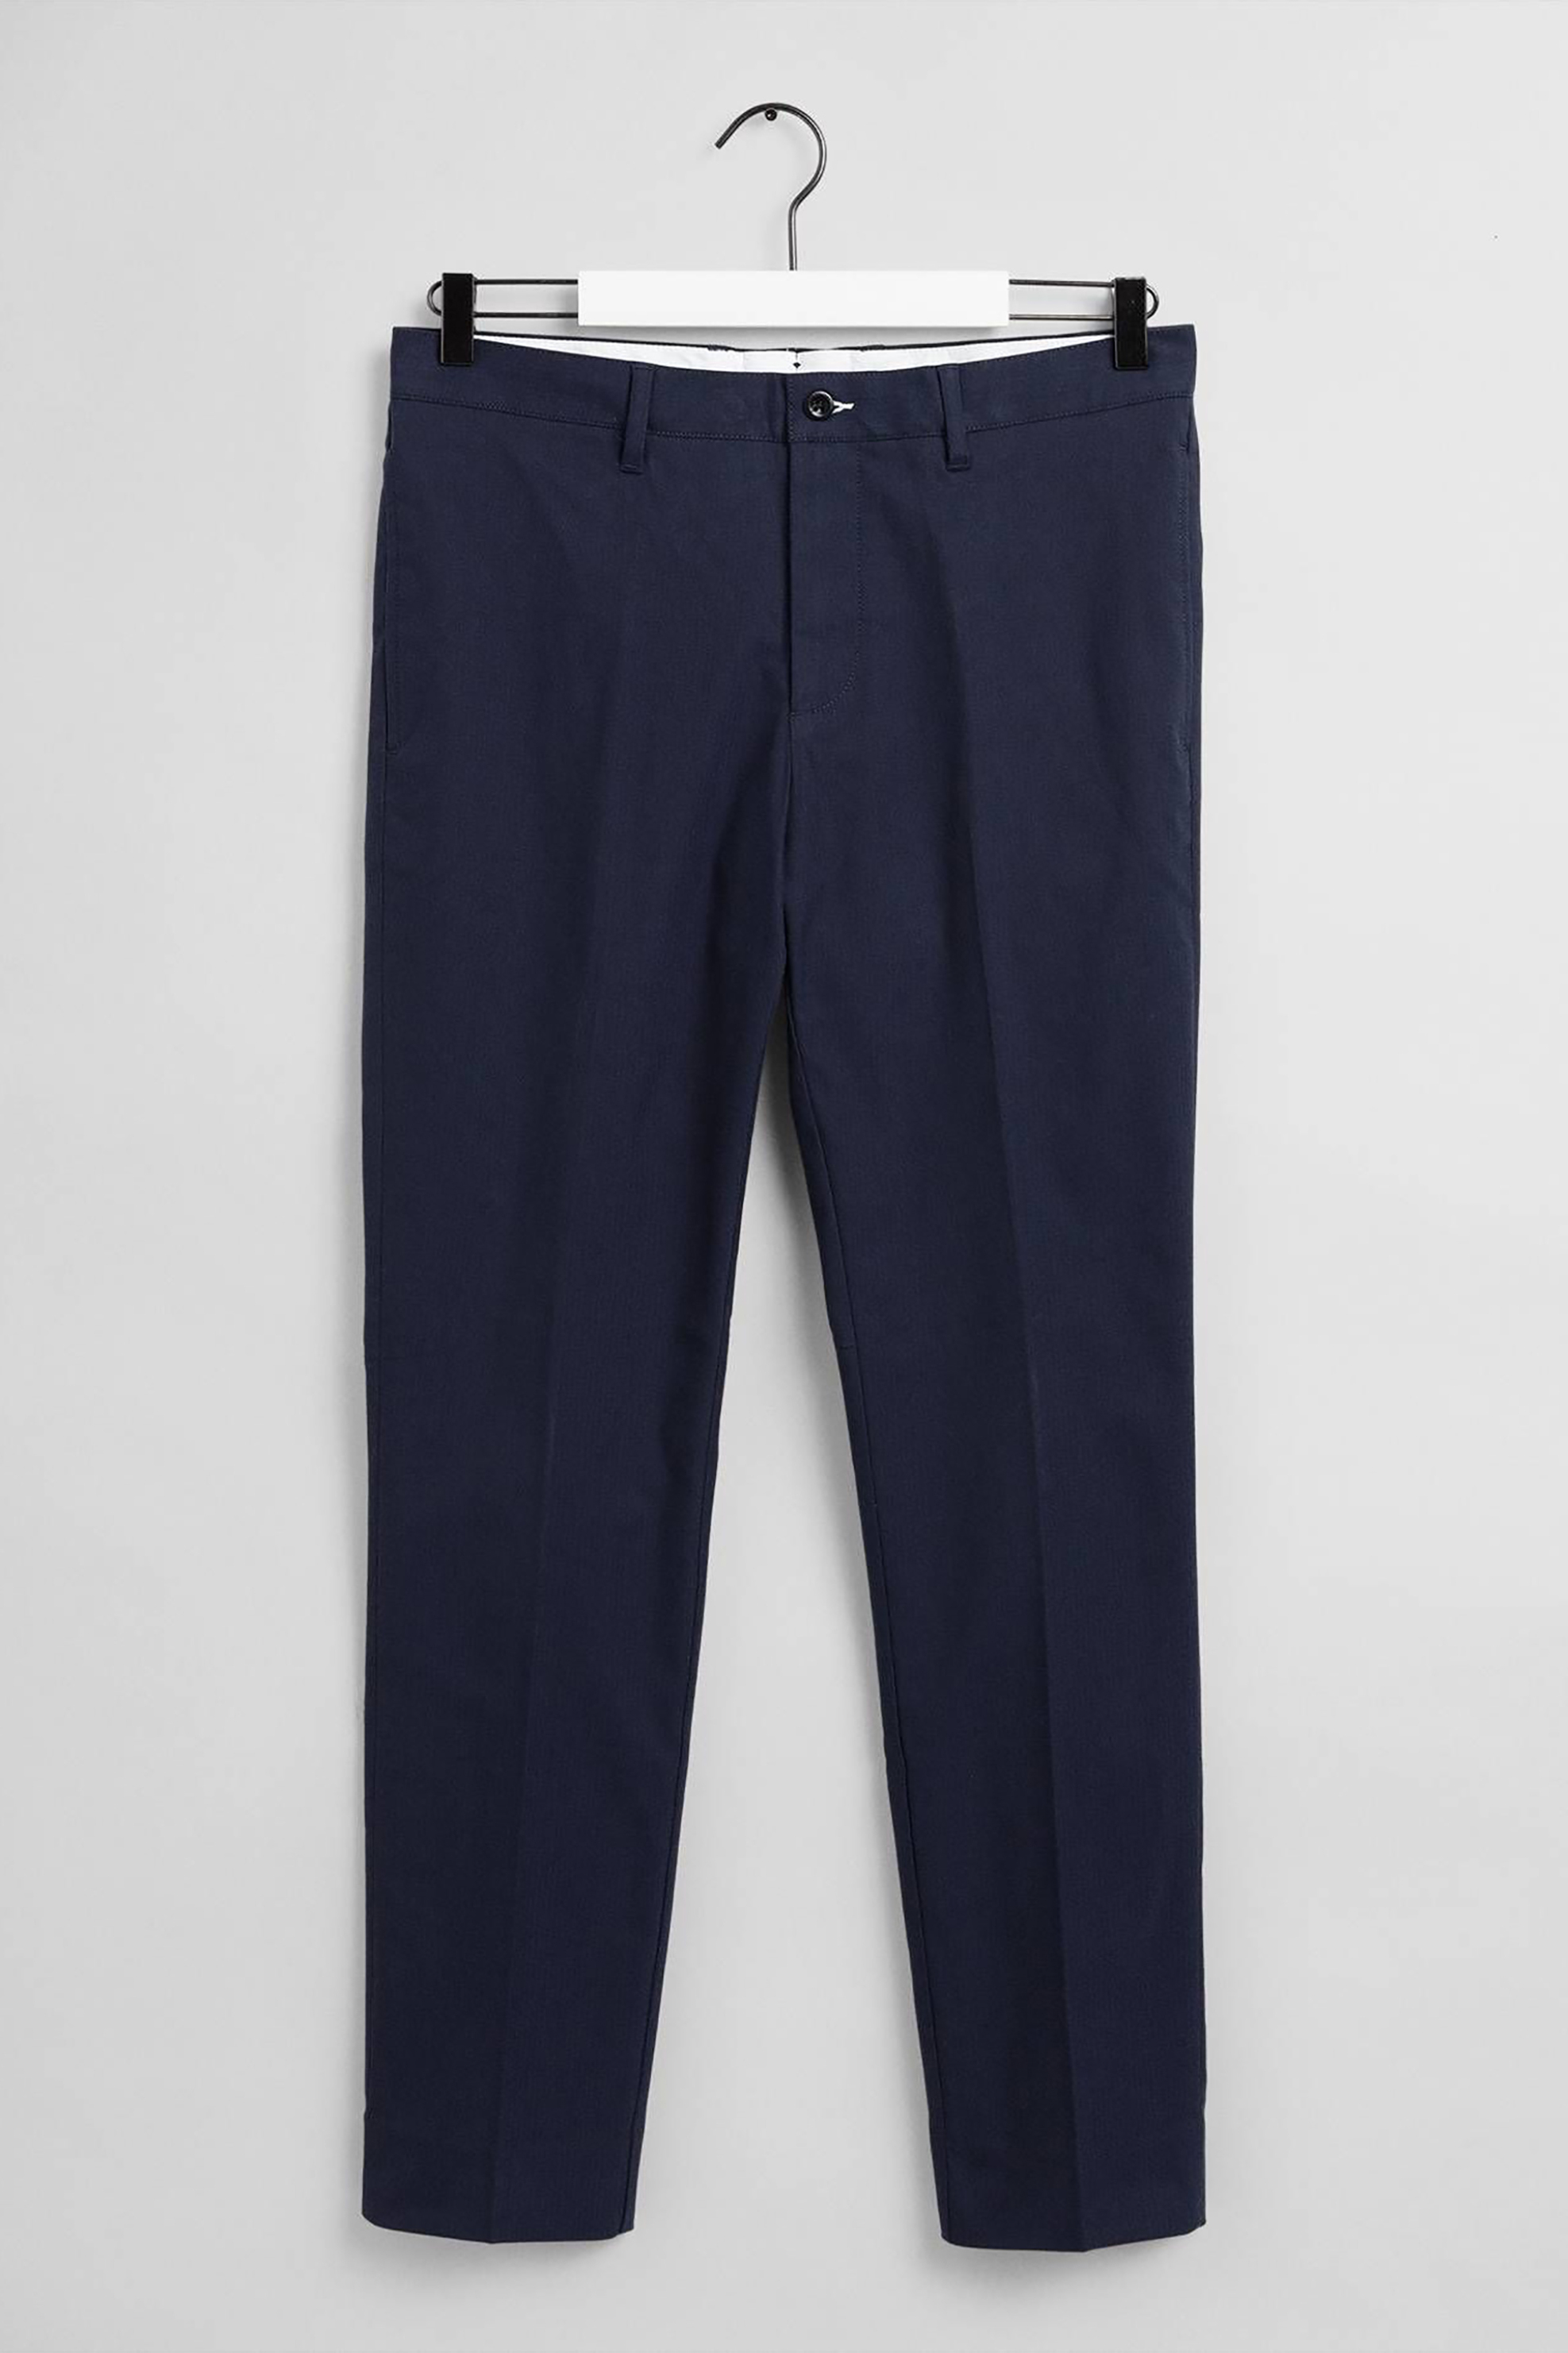 Ανδρική Μόδα > Ανδρικά Ρούχα > Ανδρικά Παντελόνια > Ανδρικά Παντελόνια Επίσημα & Βραδινά Gant ανδρικό chino παντελόνι Slim fit "Ηerringbone" - 1505074 Μπλε Σκούρο